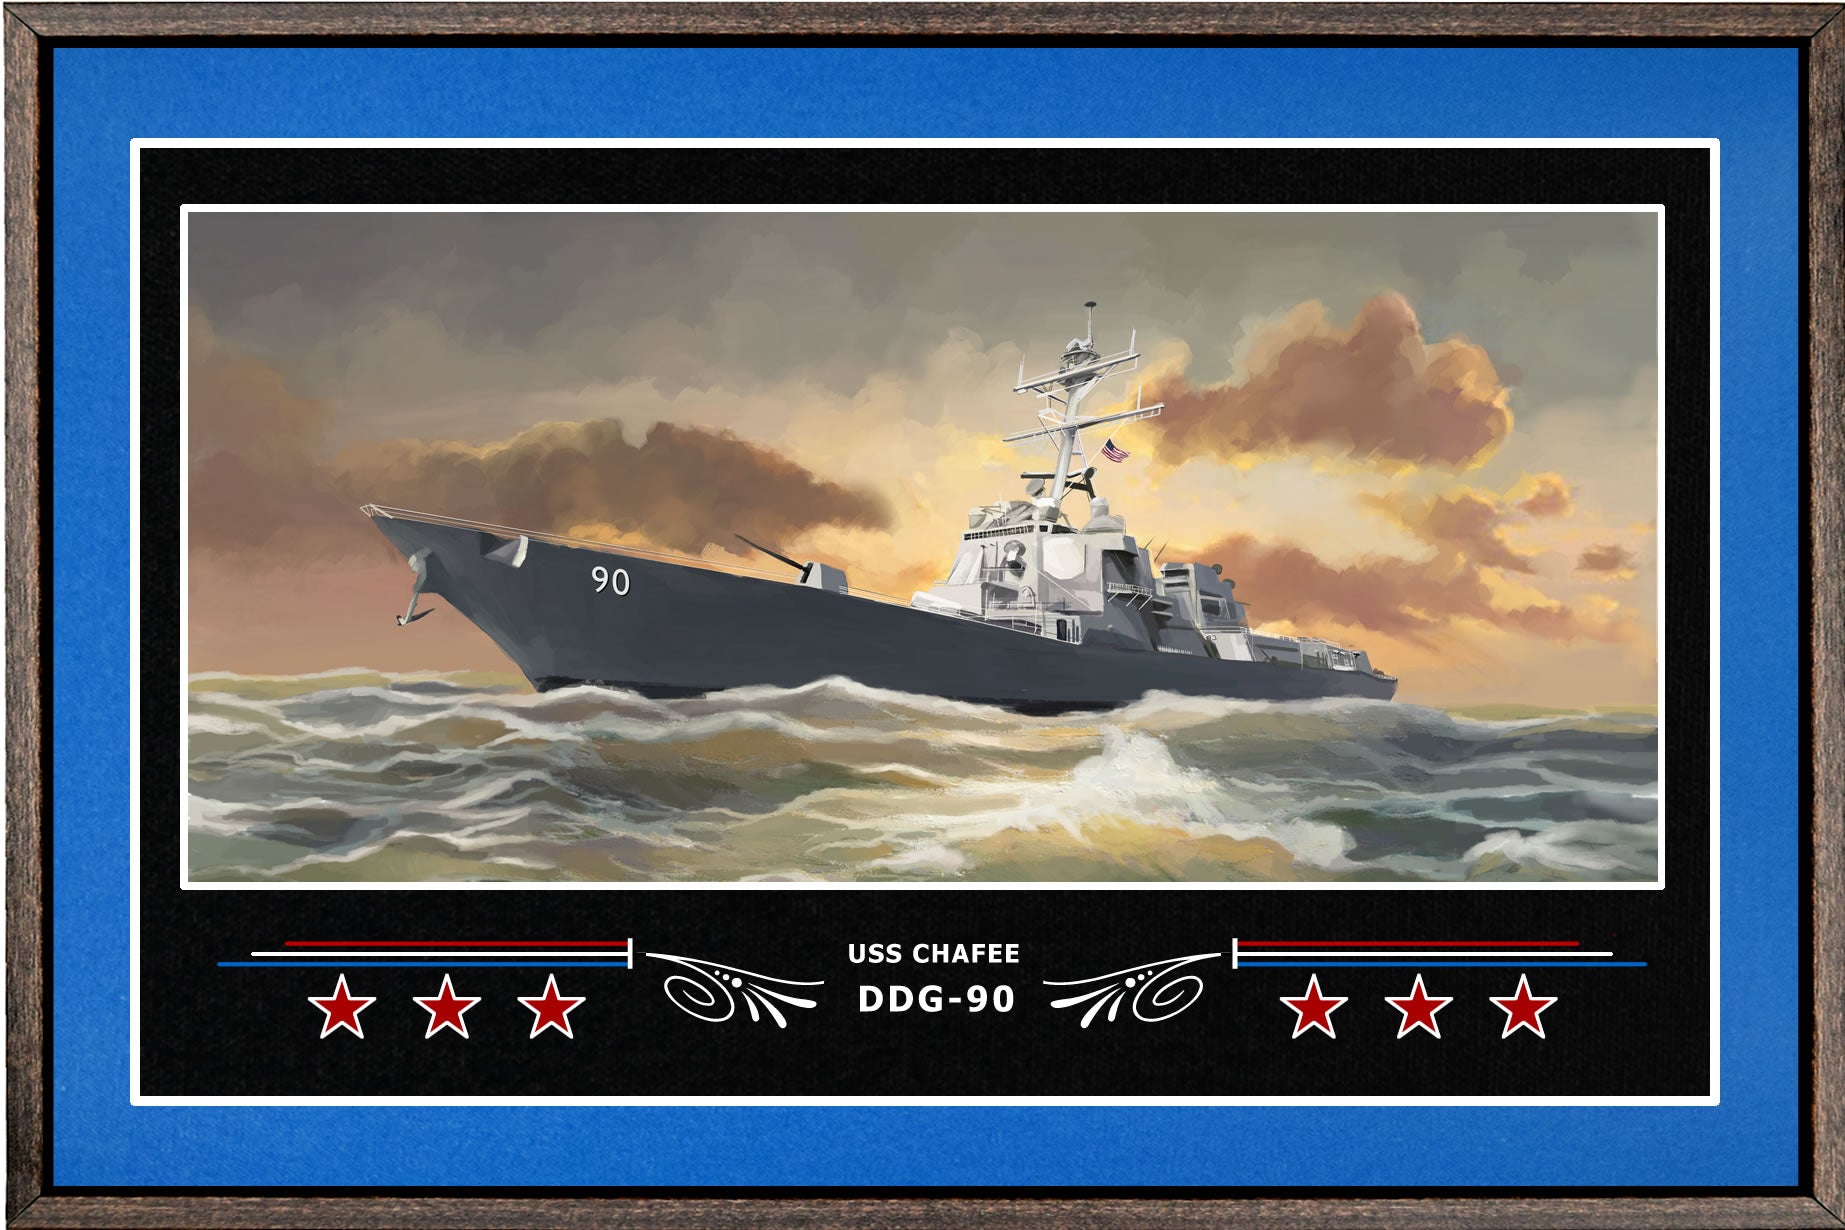 USS CHAFEE DDG 90 BOX FRAMED CANVAS ART BLUE